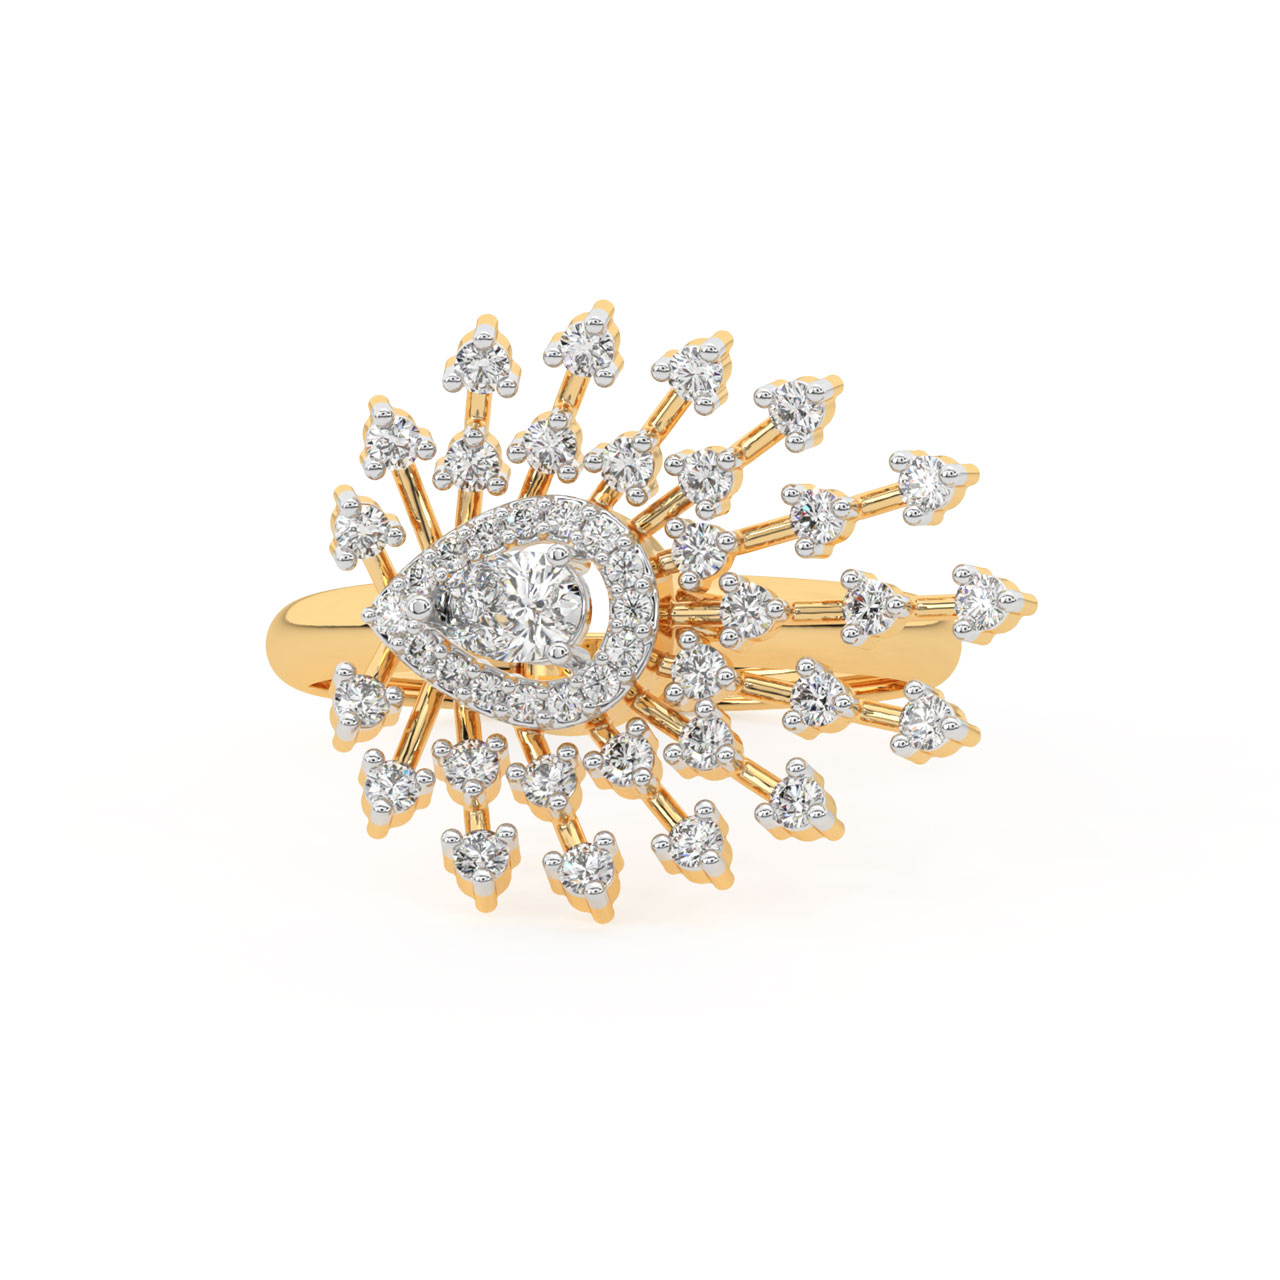 Amirah Round Diamond Engagement Ring